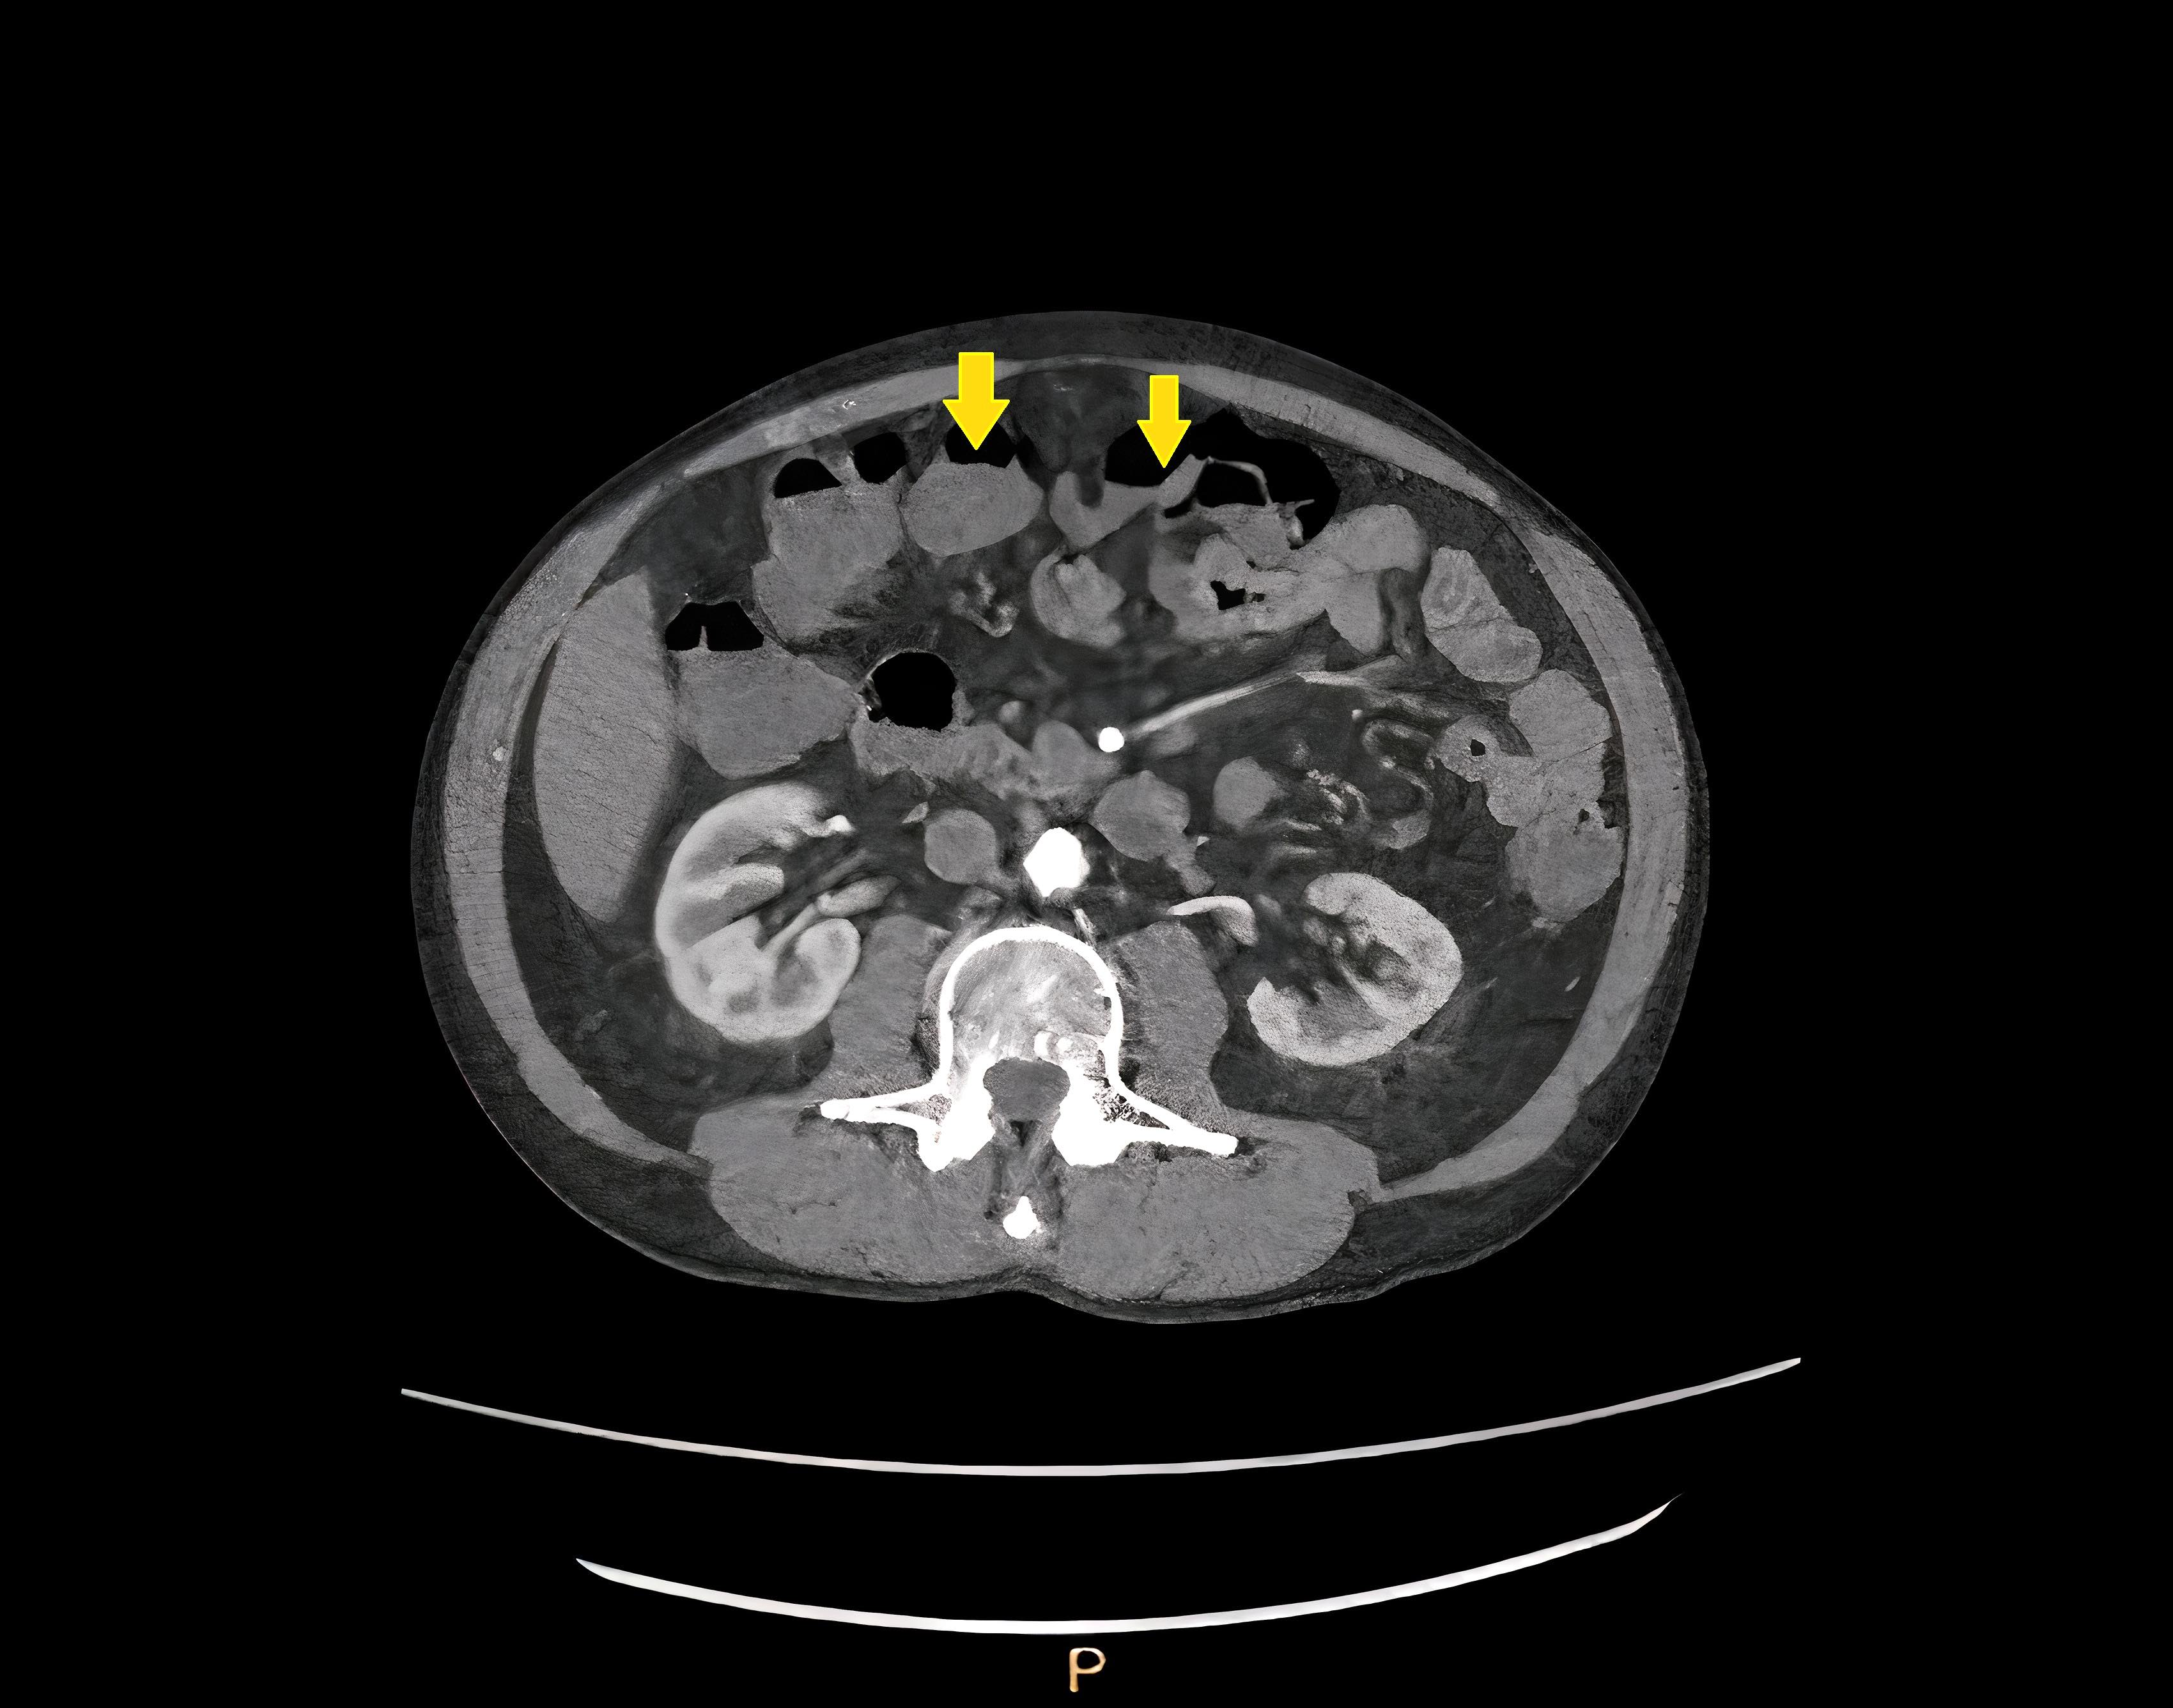 CT of abdomen and pelvis